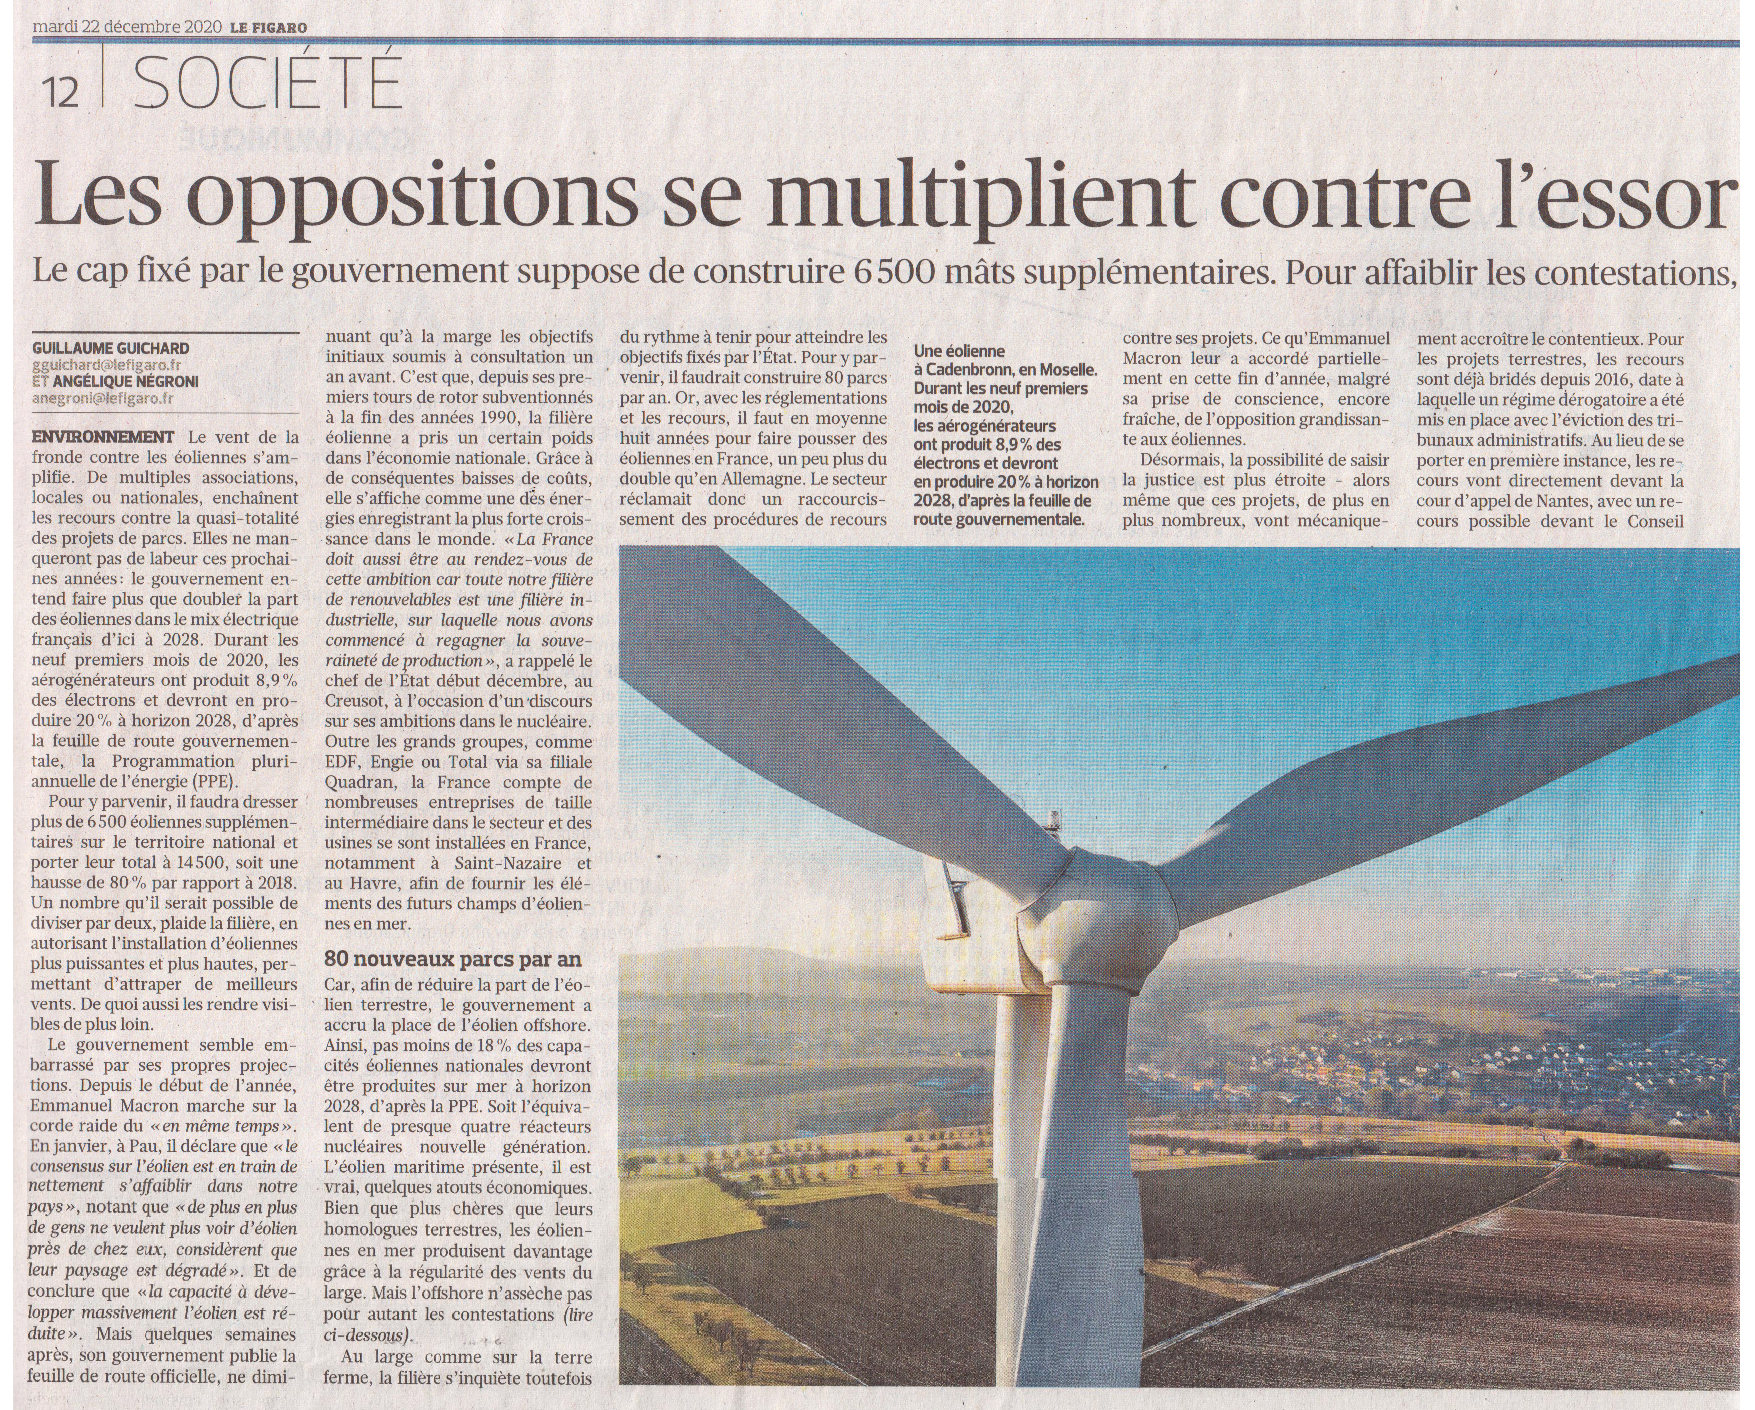 Le Figaro du 22 décembre 2020 - Eolien (2)